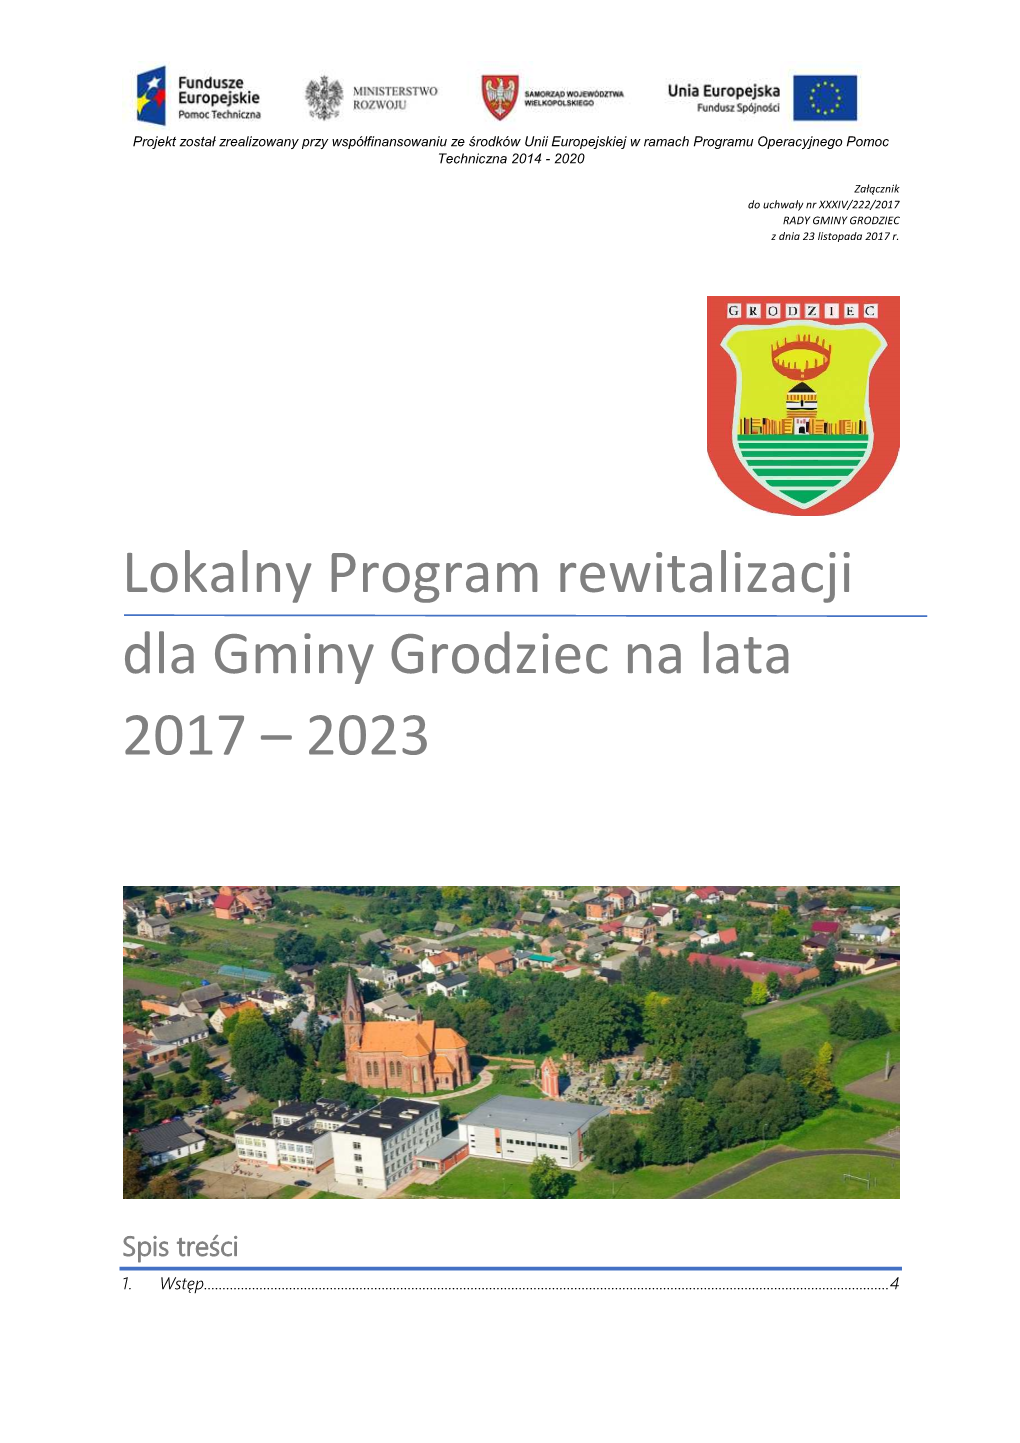 Lokalny Program Rewitalizacji Dla Gminy Grodziec Na Lata 2017 – 2023